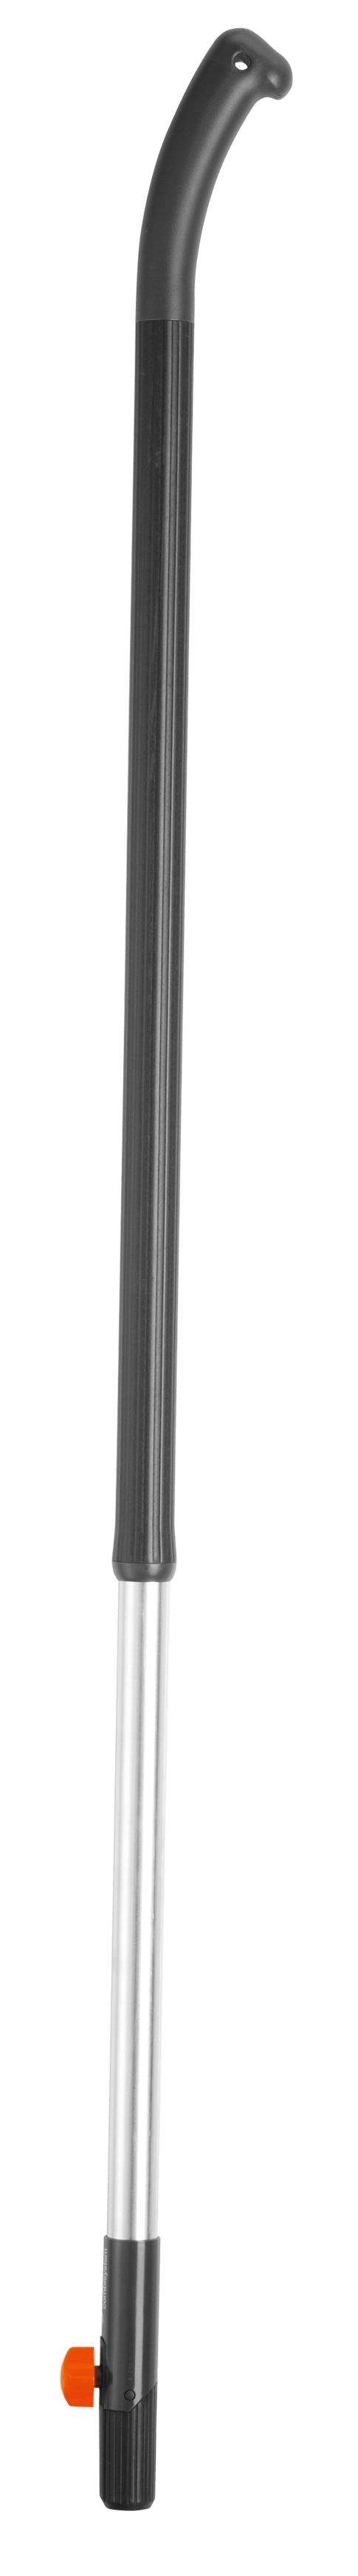 Gardena CS-Ergoline Aluminiumstiel Alu 130